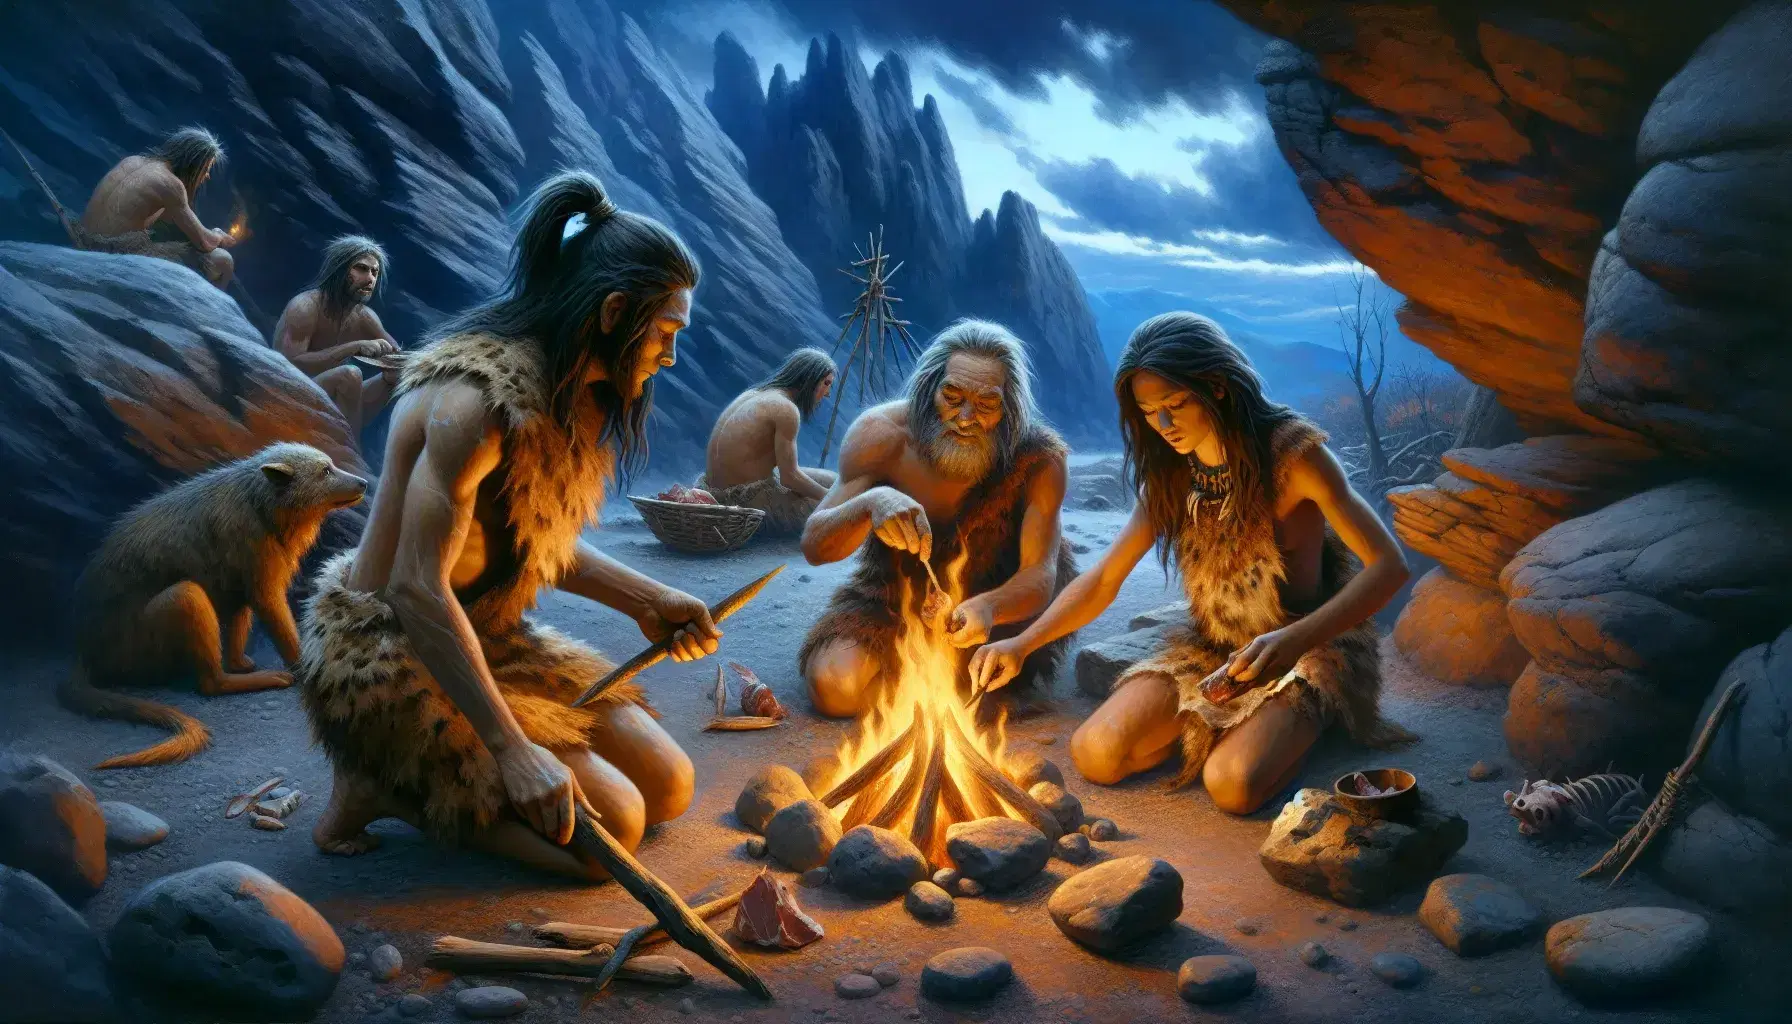 Escena paleolítica con tres humanos alrededor de una fogata, uno cocinando carne y otro tallando herramientas de piedra, bajo un cielo crepuscular.